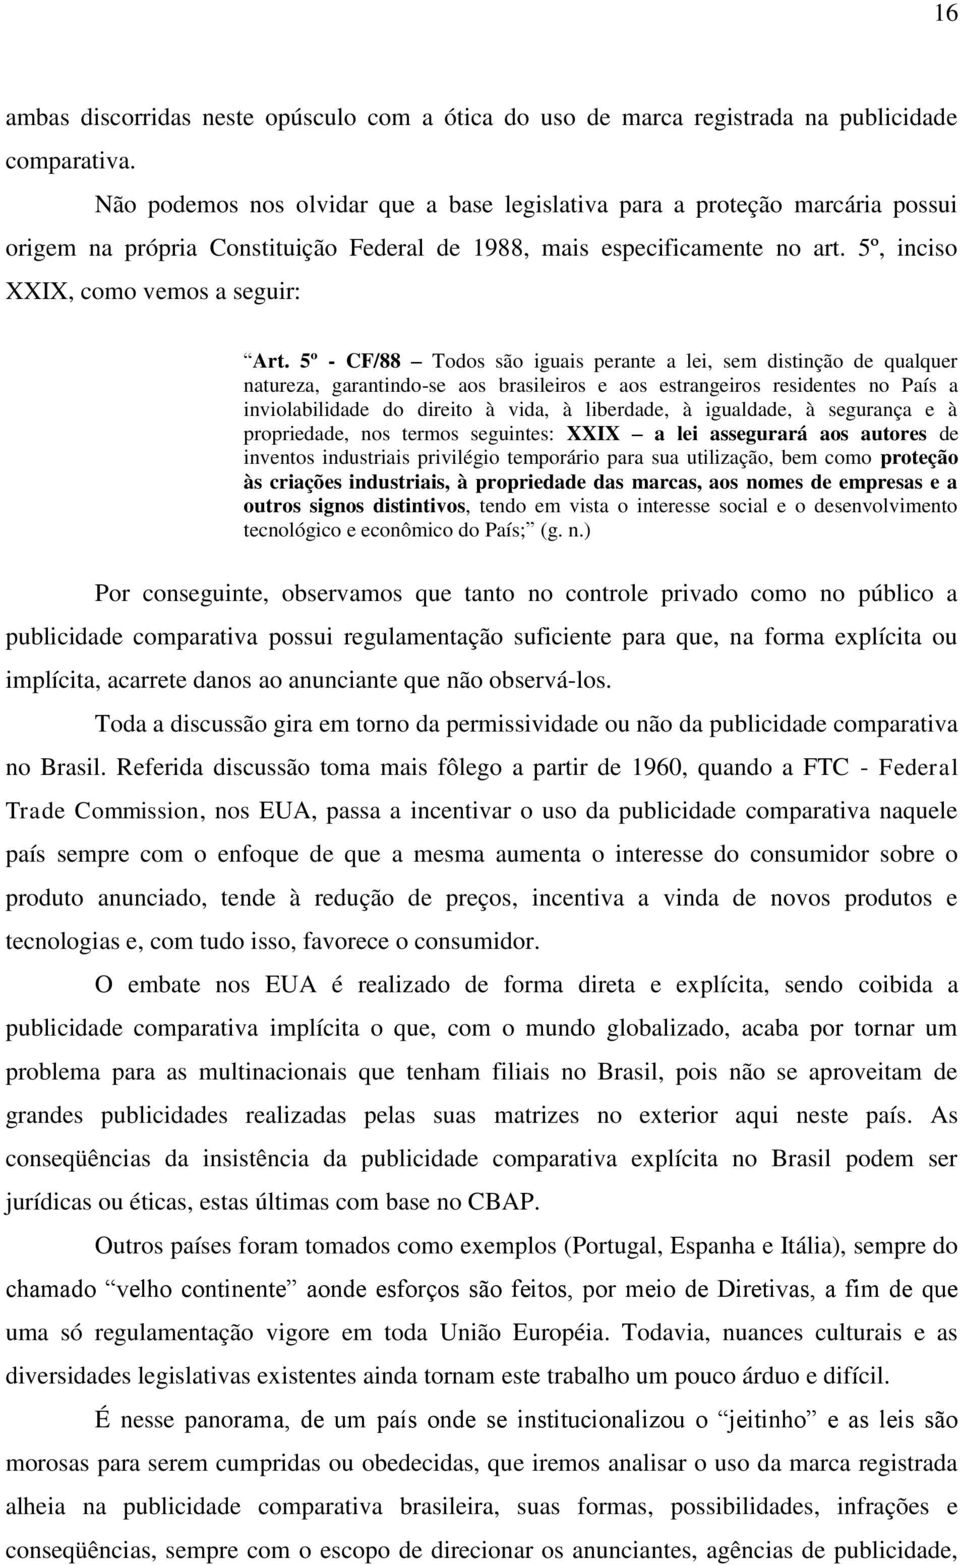 5º - CF/88 Todos são iguais perante a lei, sem distinção de qualquer natureza, garantindo-se aos brasileiros e aos estrangeiros residentes no País a inviolabilidade do direito à vida, à liberdade, à